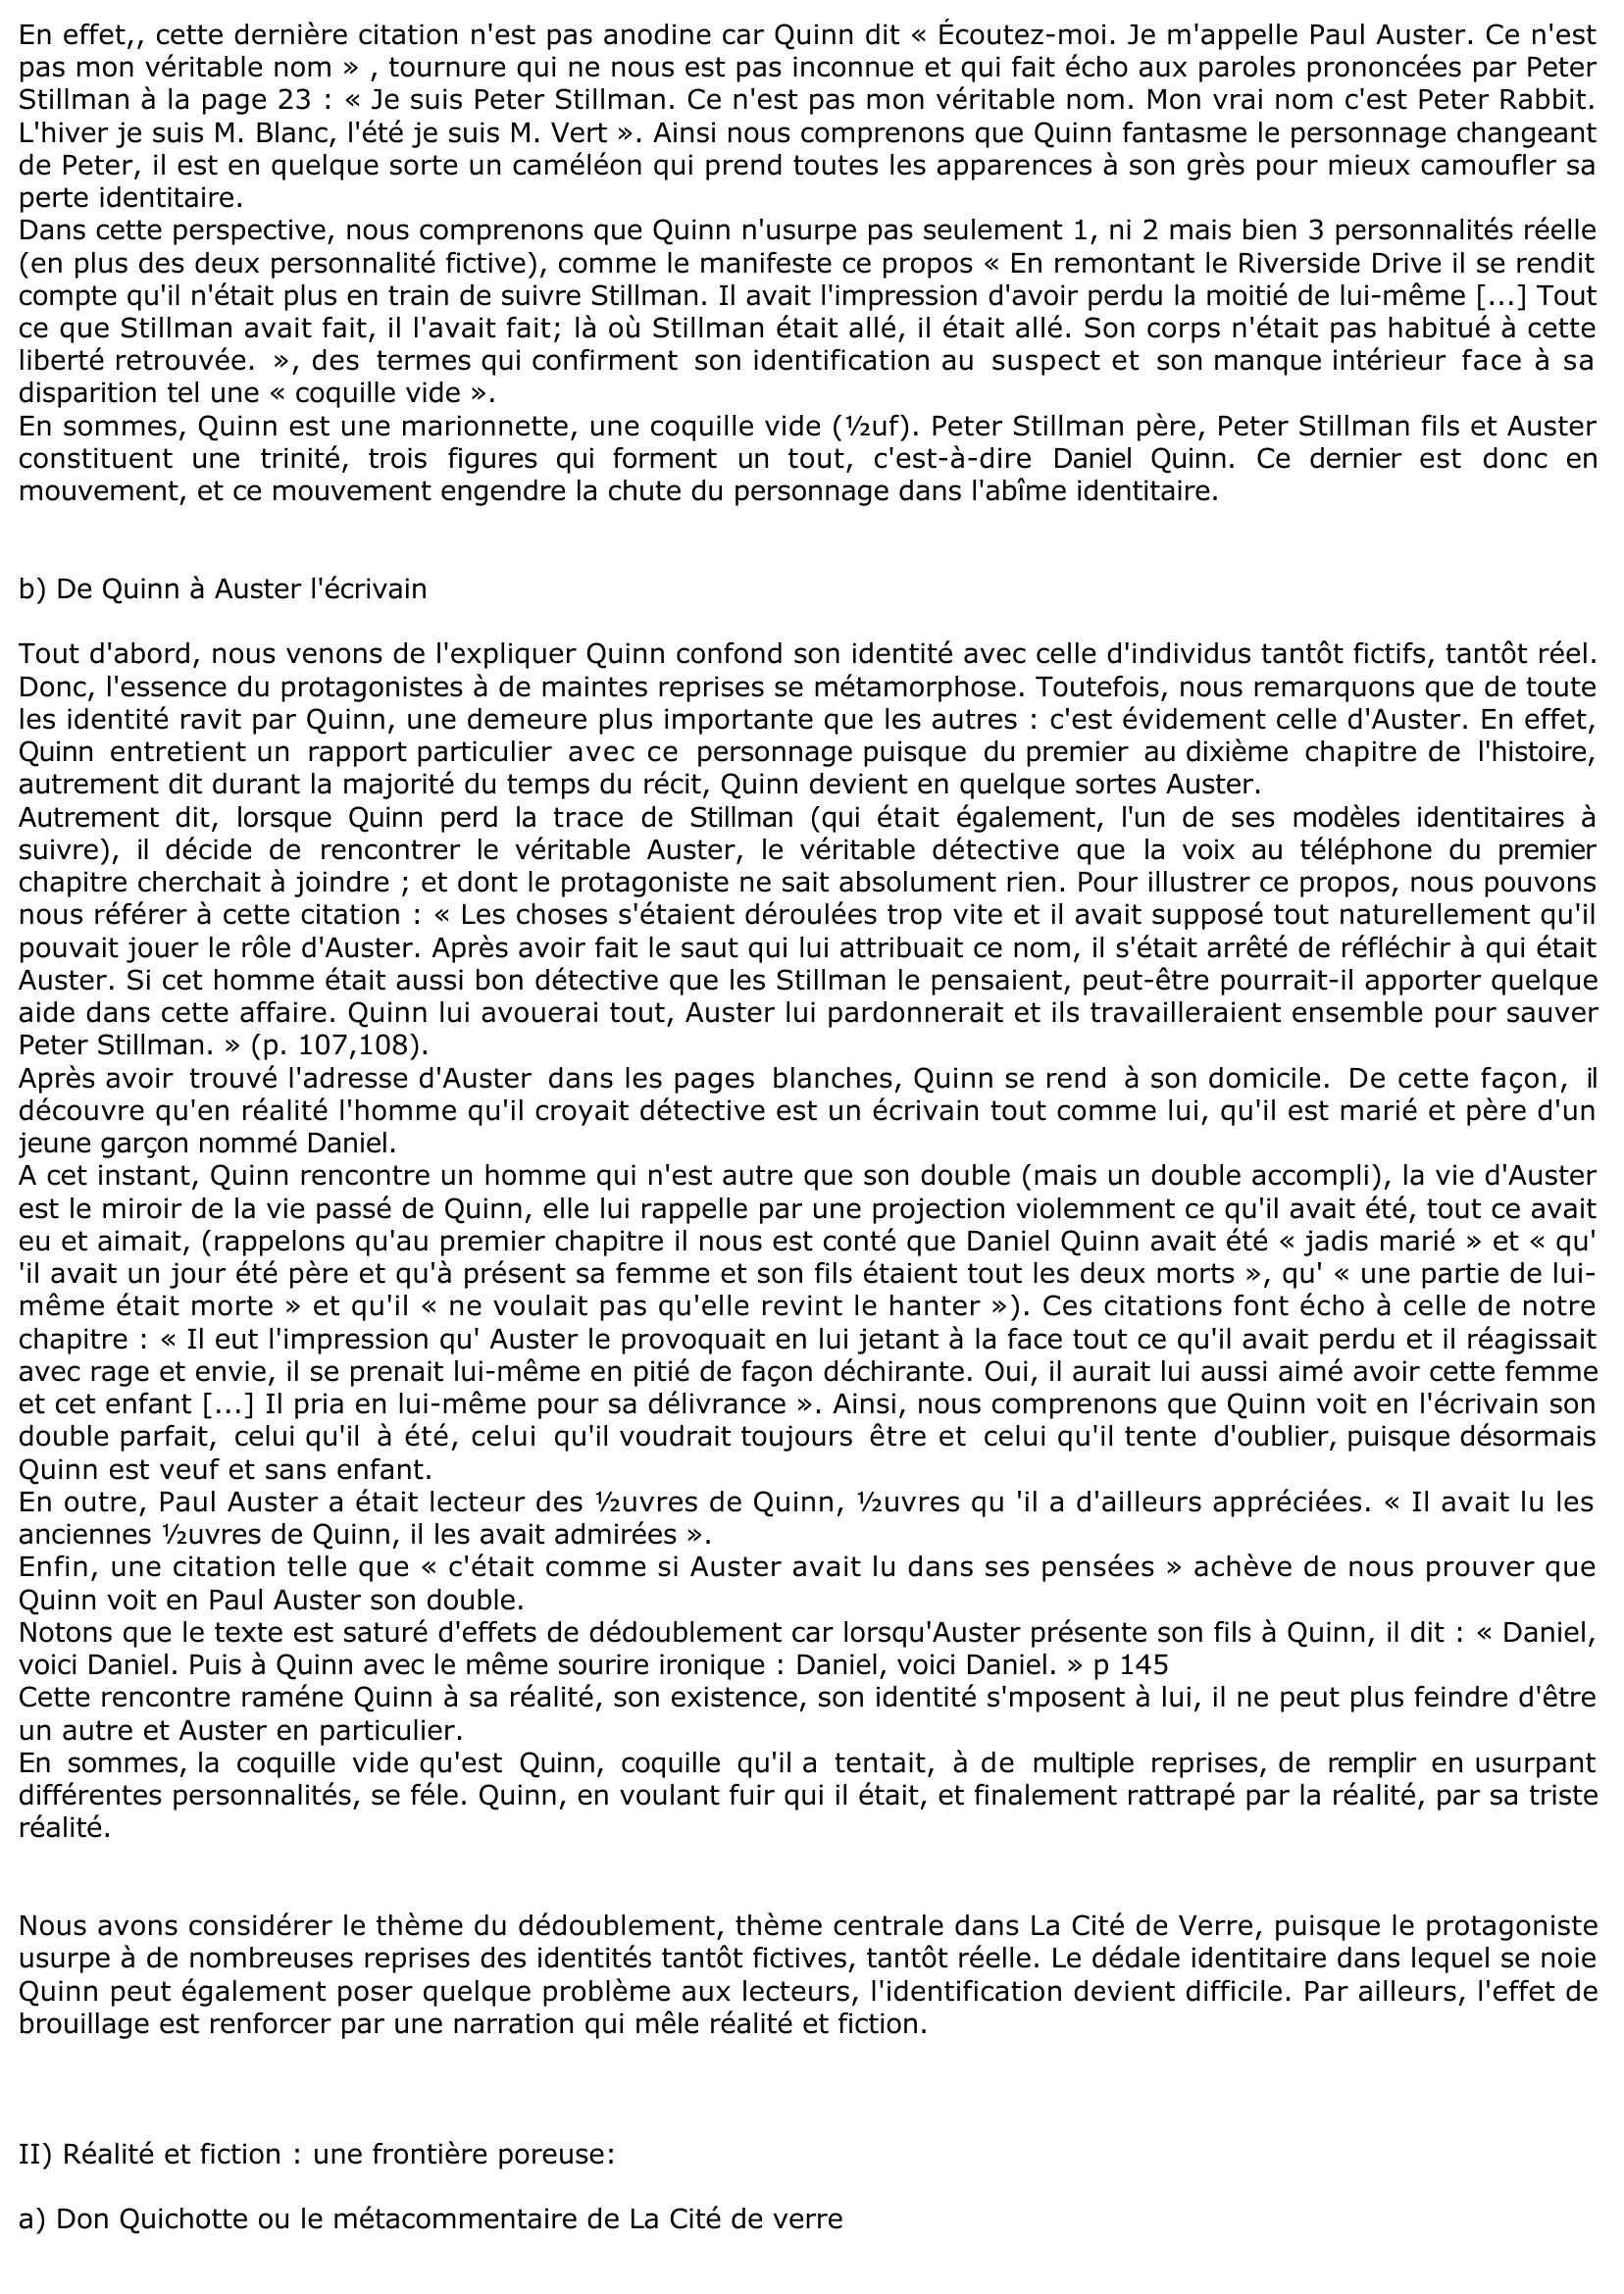 Prévisualisation du document Commentaire composé chapitre 10 Cité de verre de Paul Auster